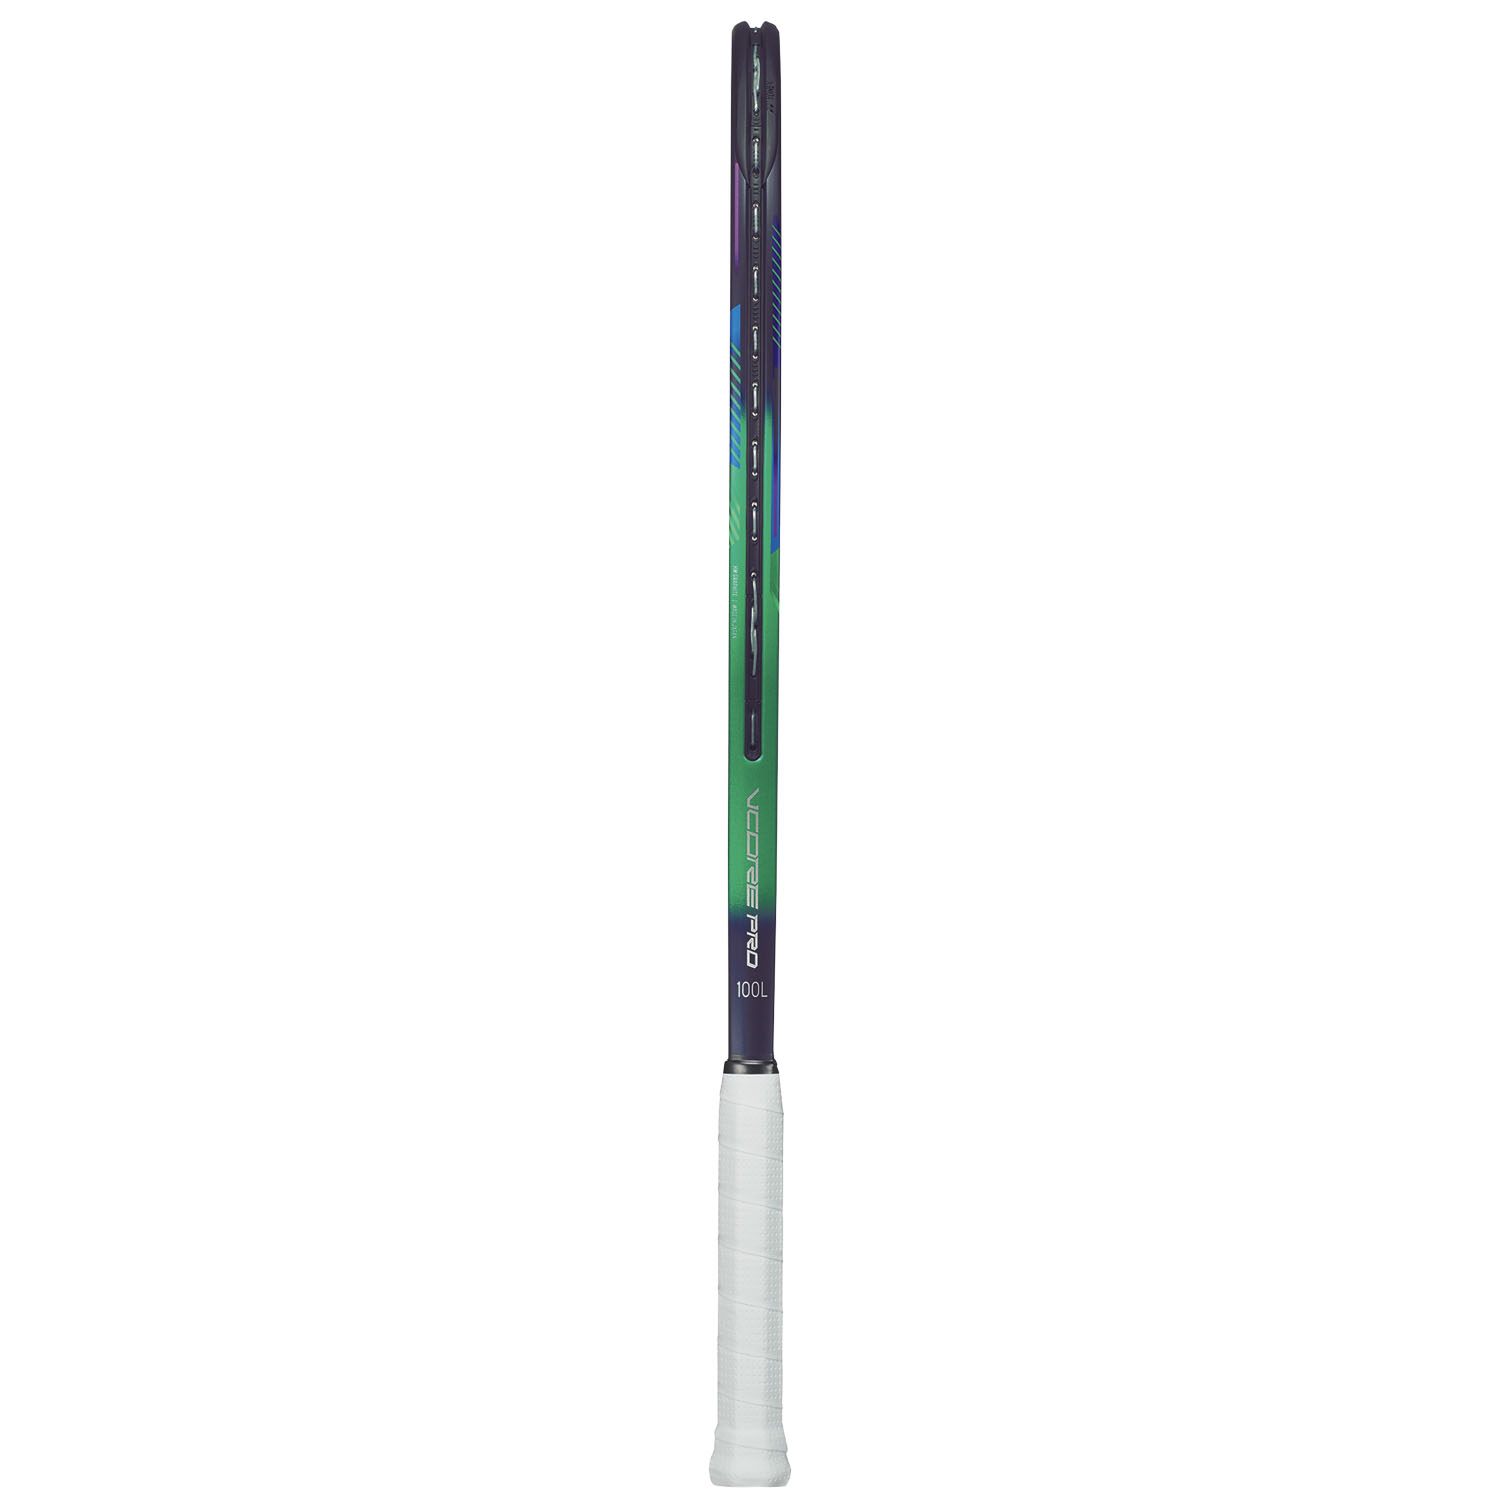 Yonex Vcore Pro 100L (280gr) - Green/Purple